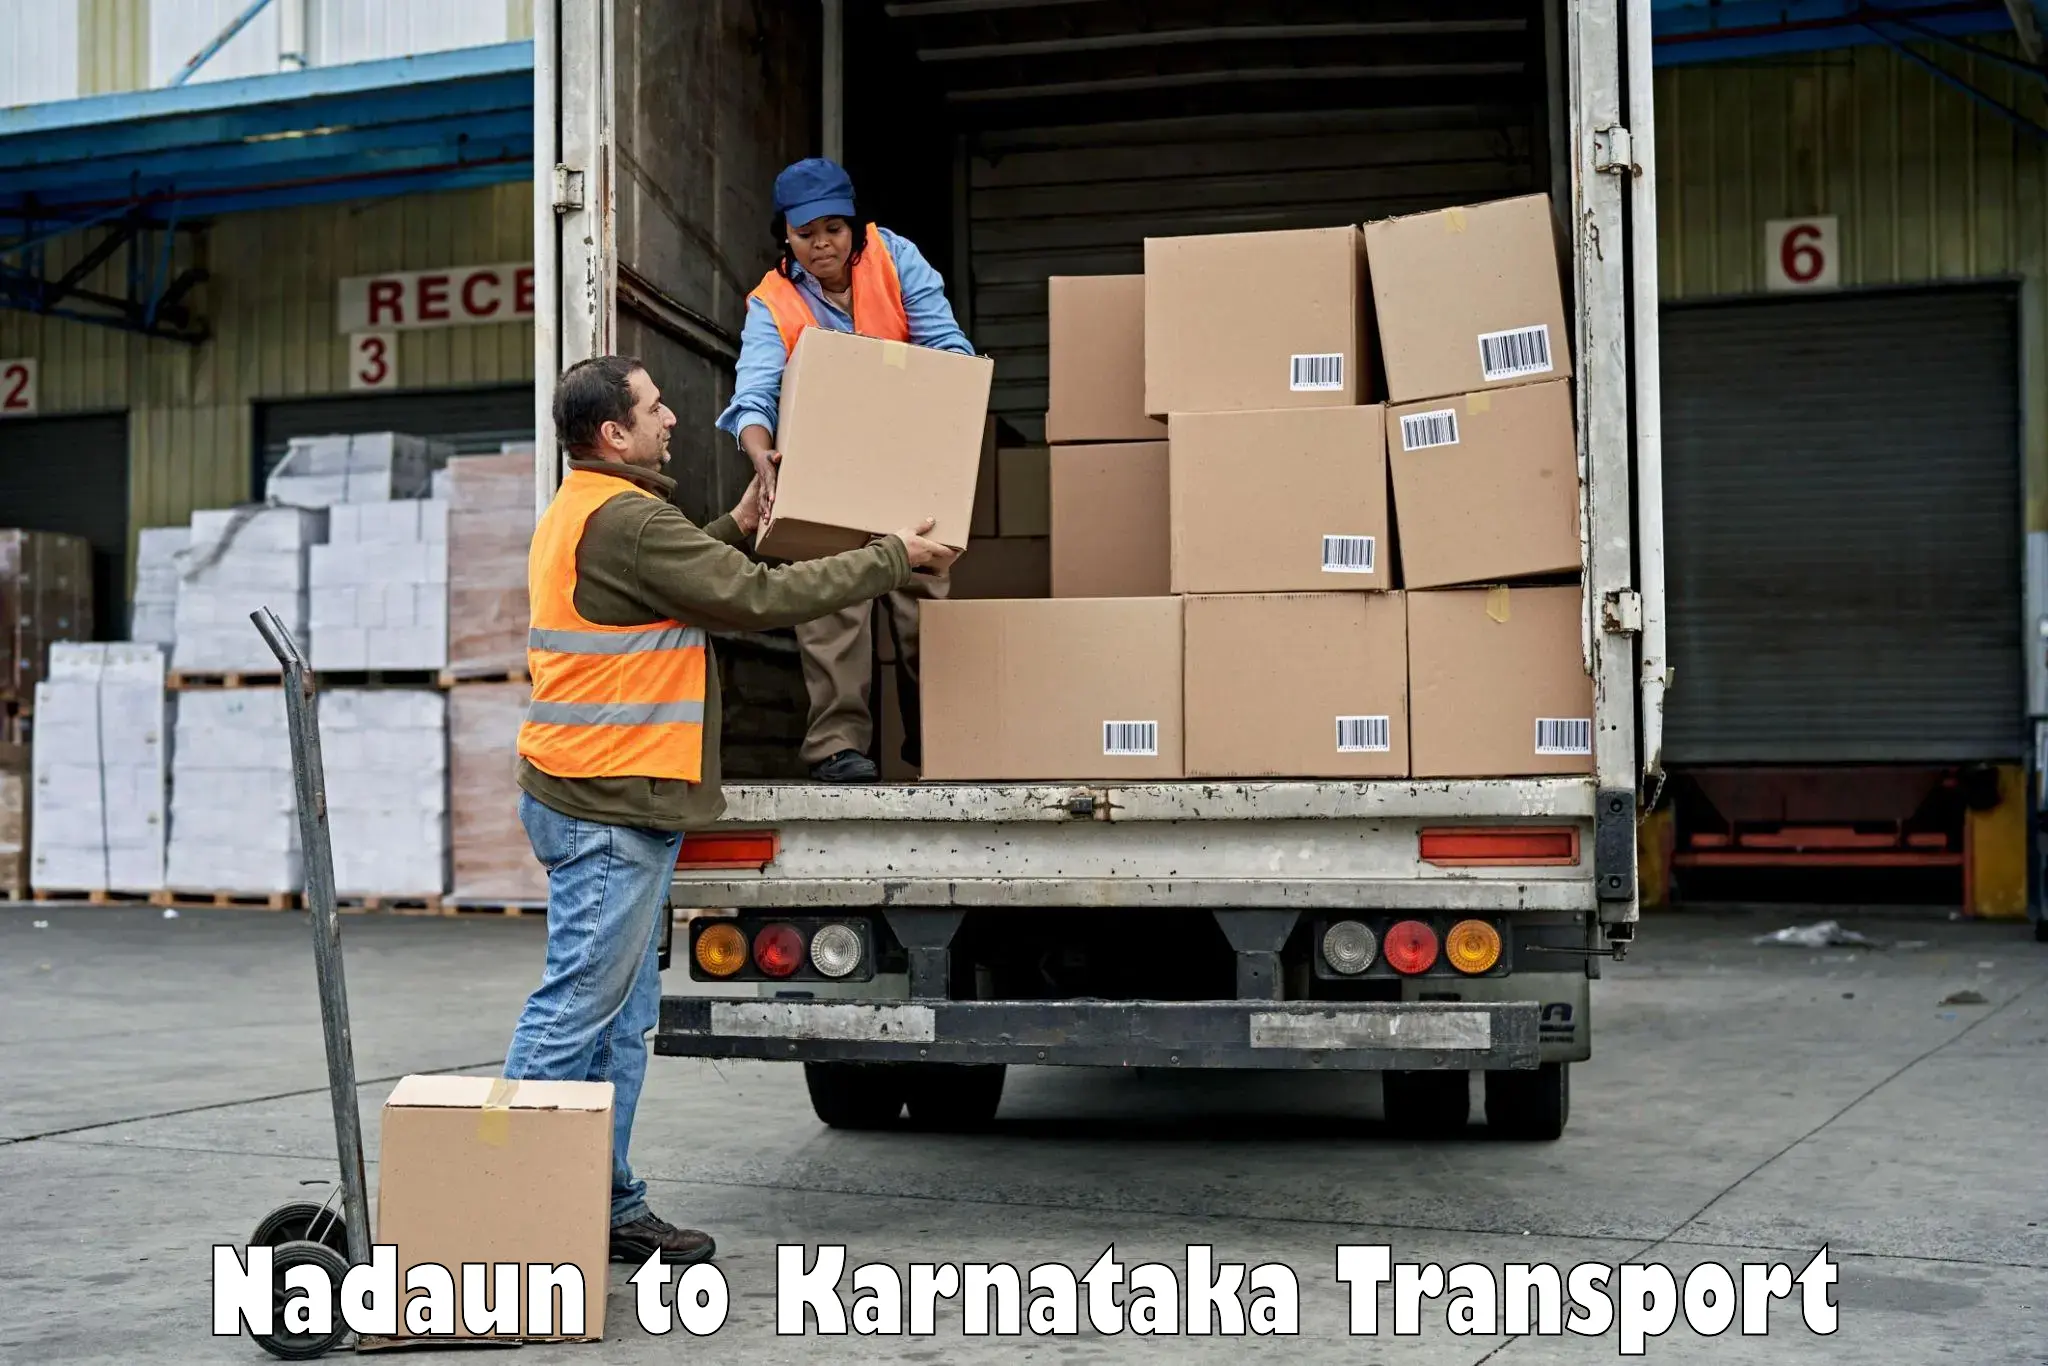 Air cargo transport services Nadaun to Karnataka